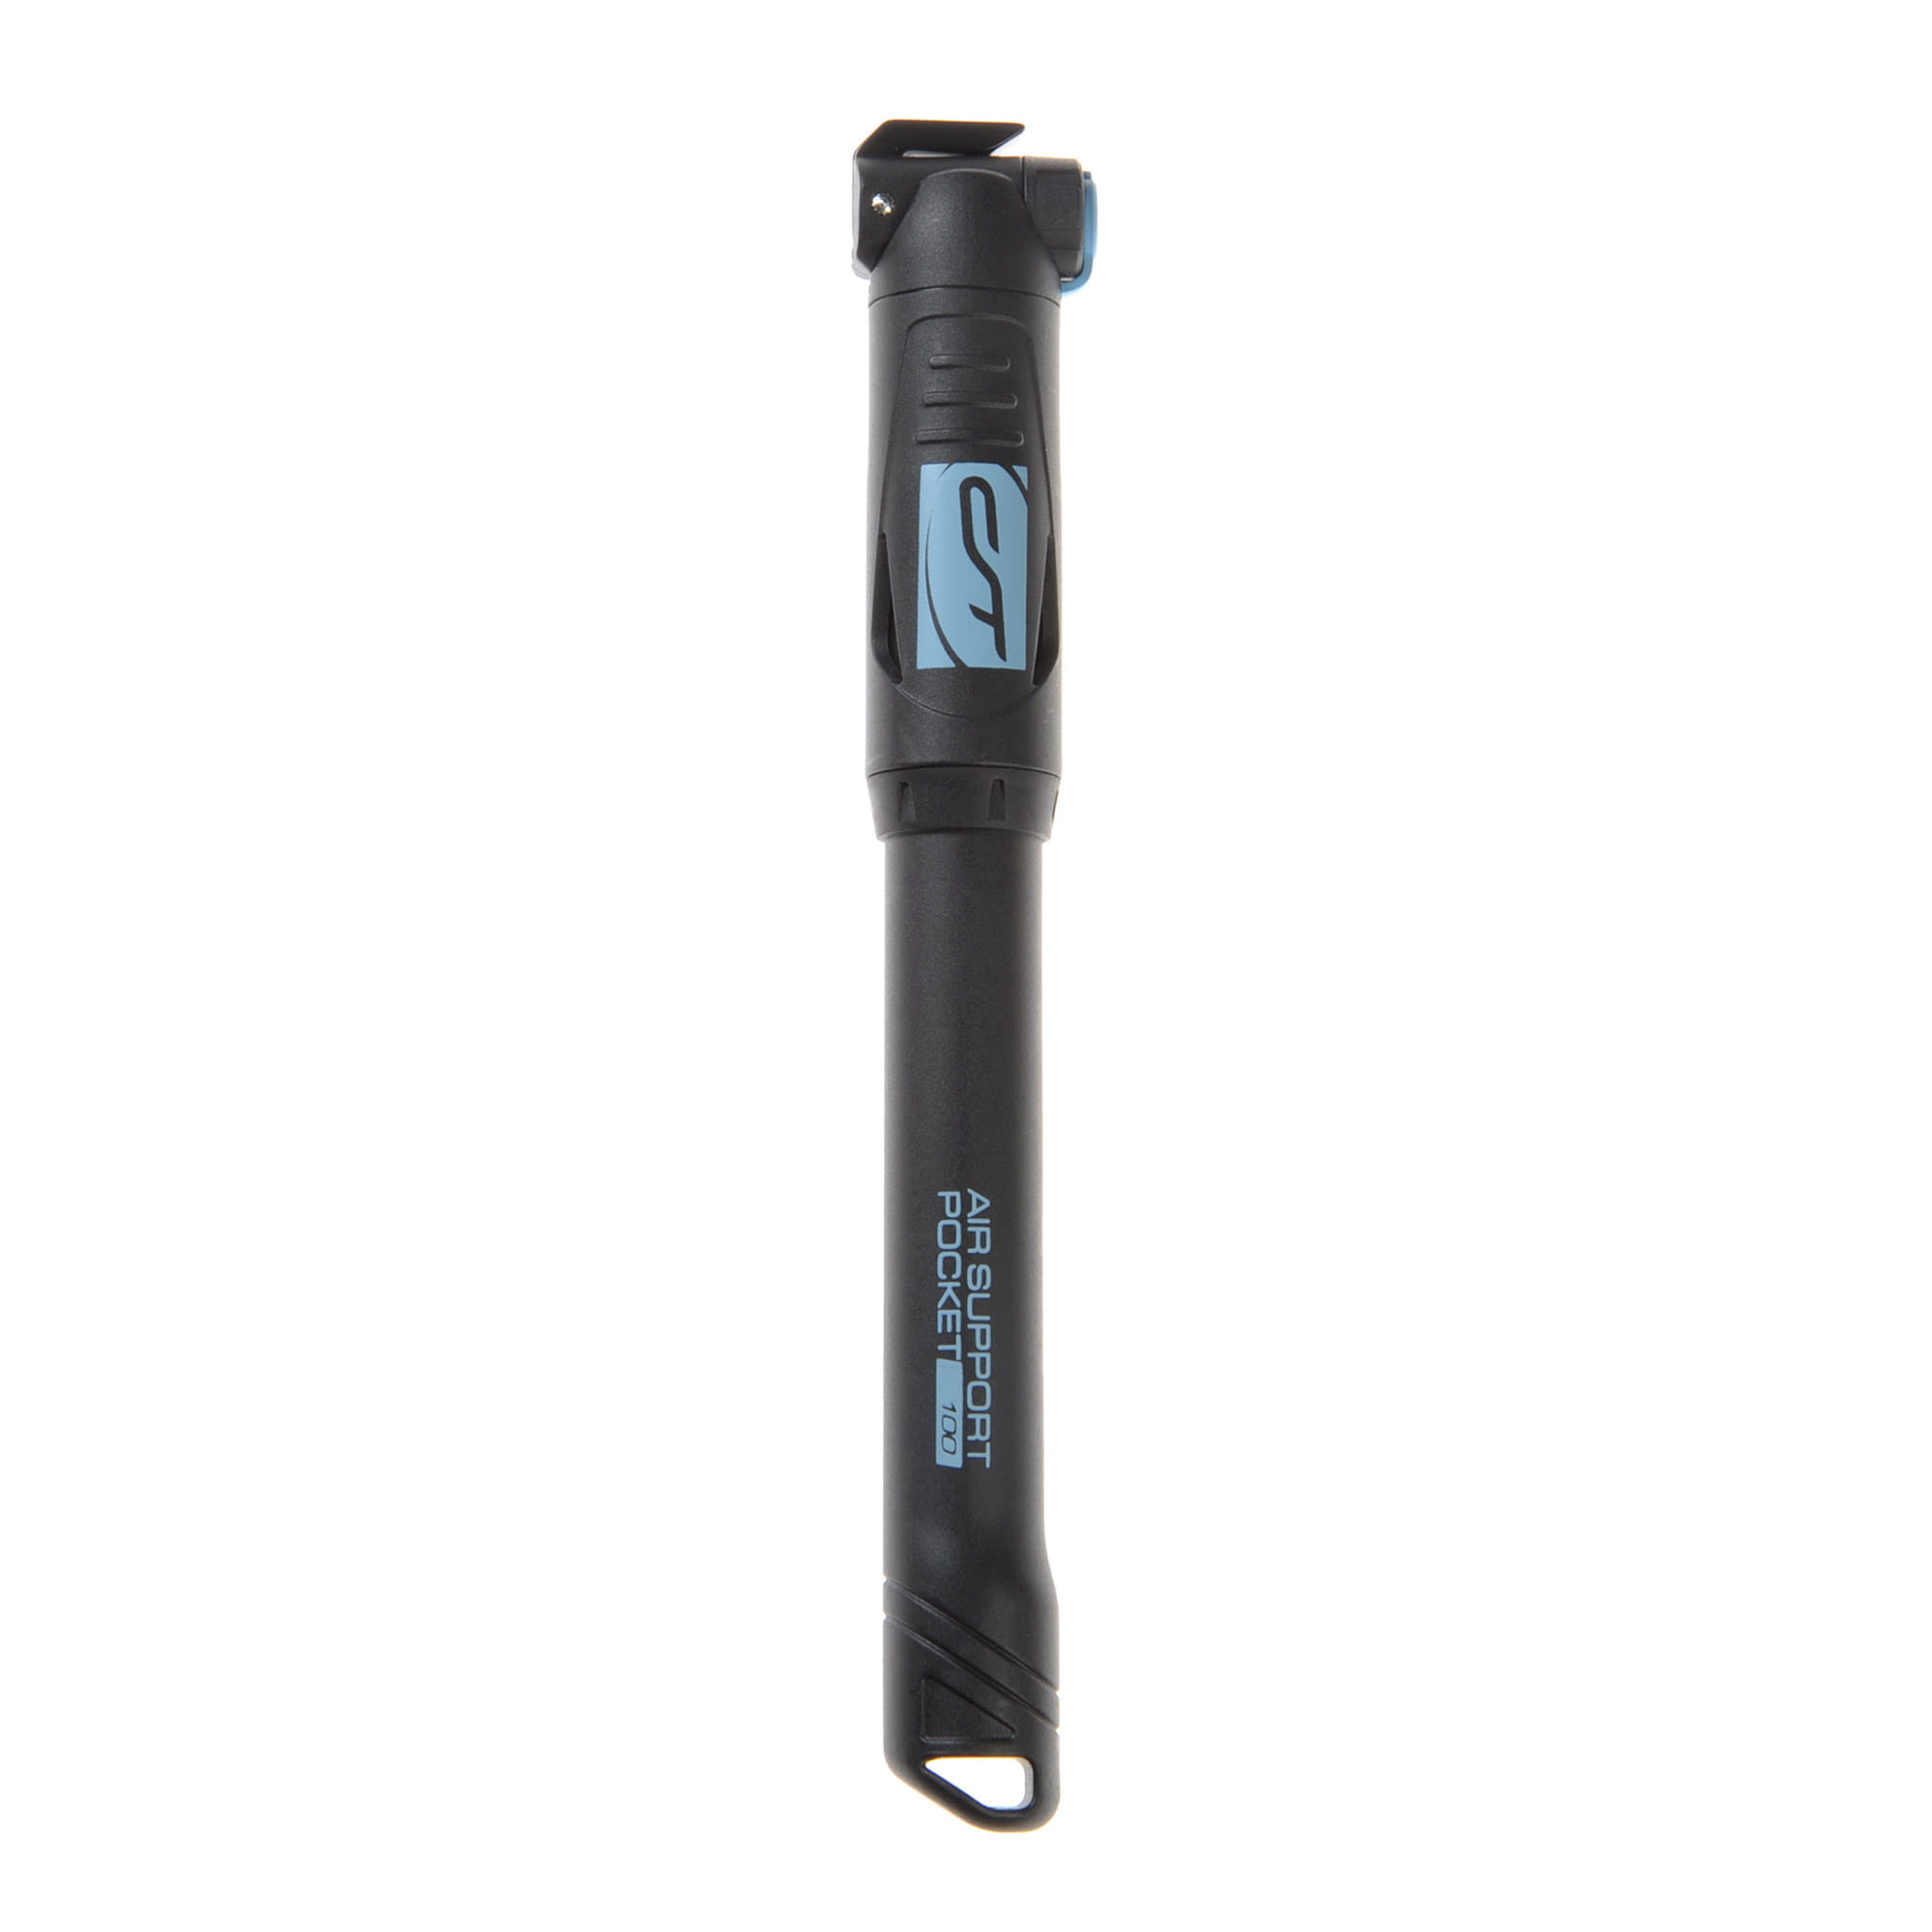 Contec Air Support Pocket Neo 100 Mini Bike Pump 7 bar